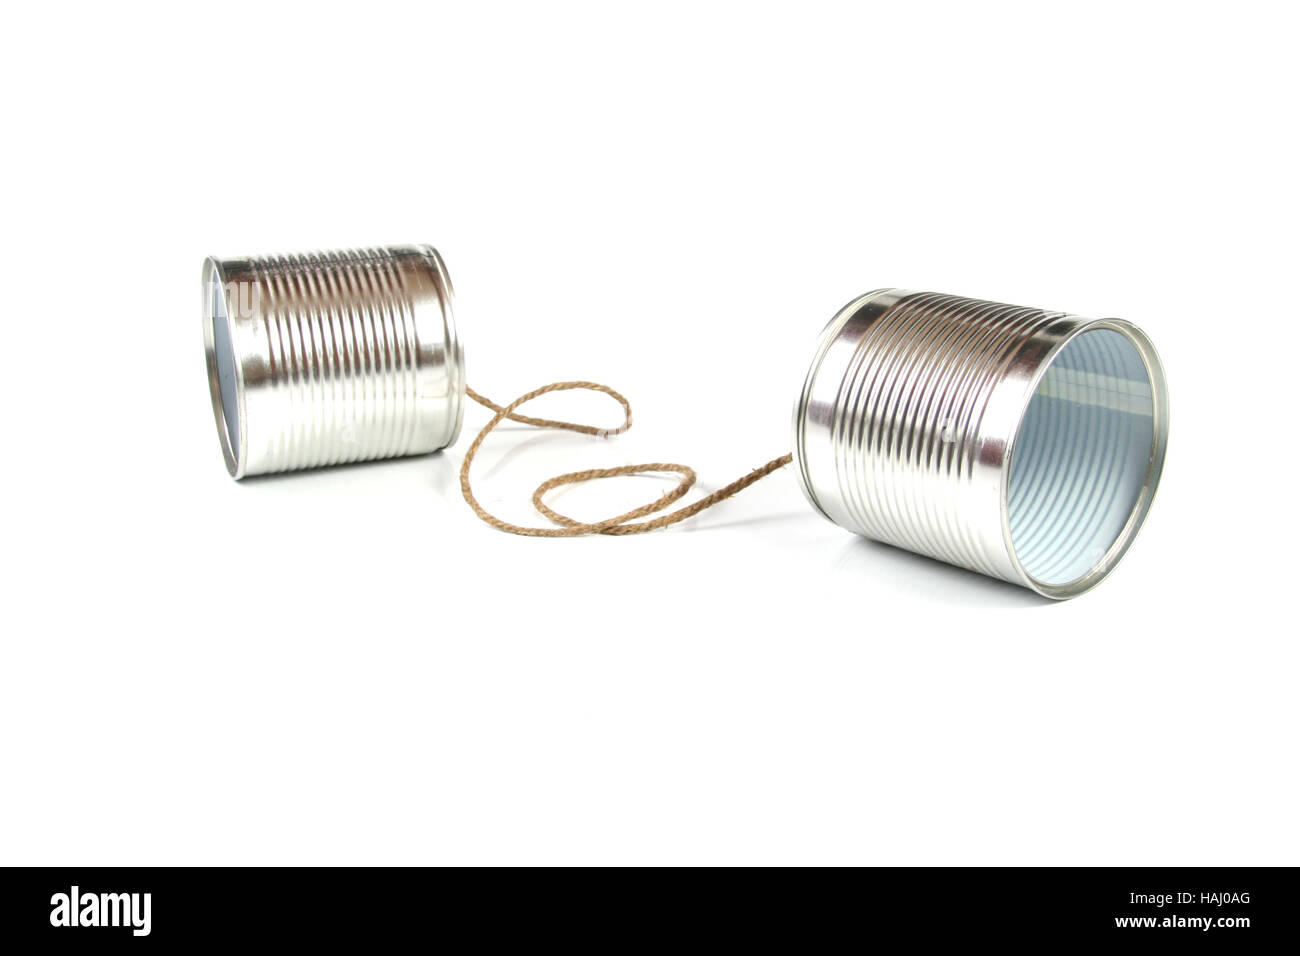 El concepto de comunicación: teléfono de latas Foto de stock